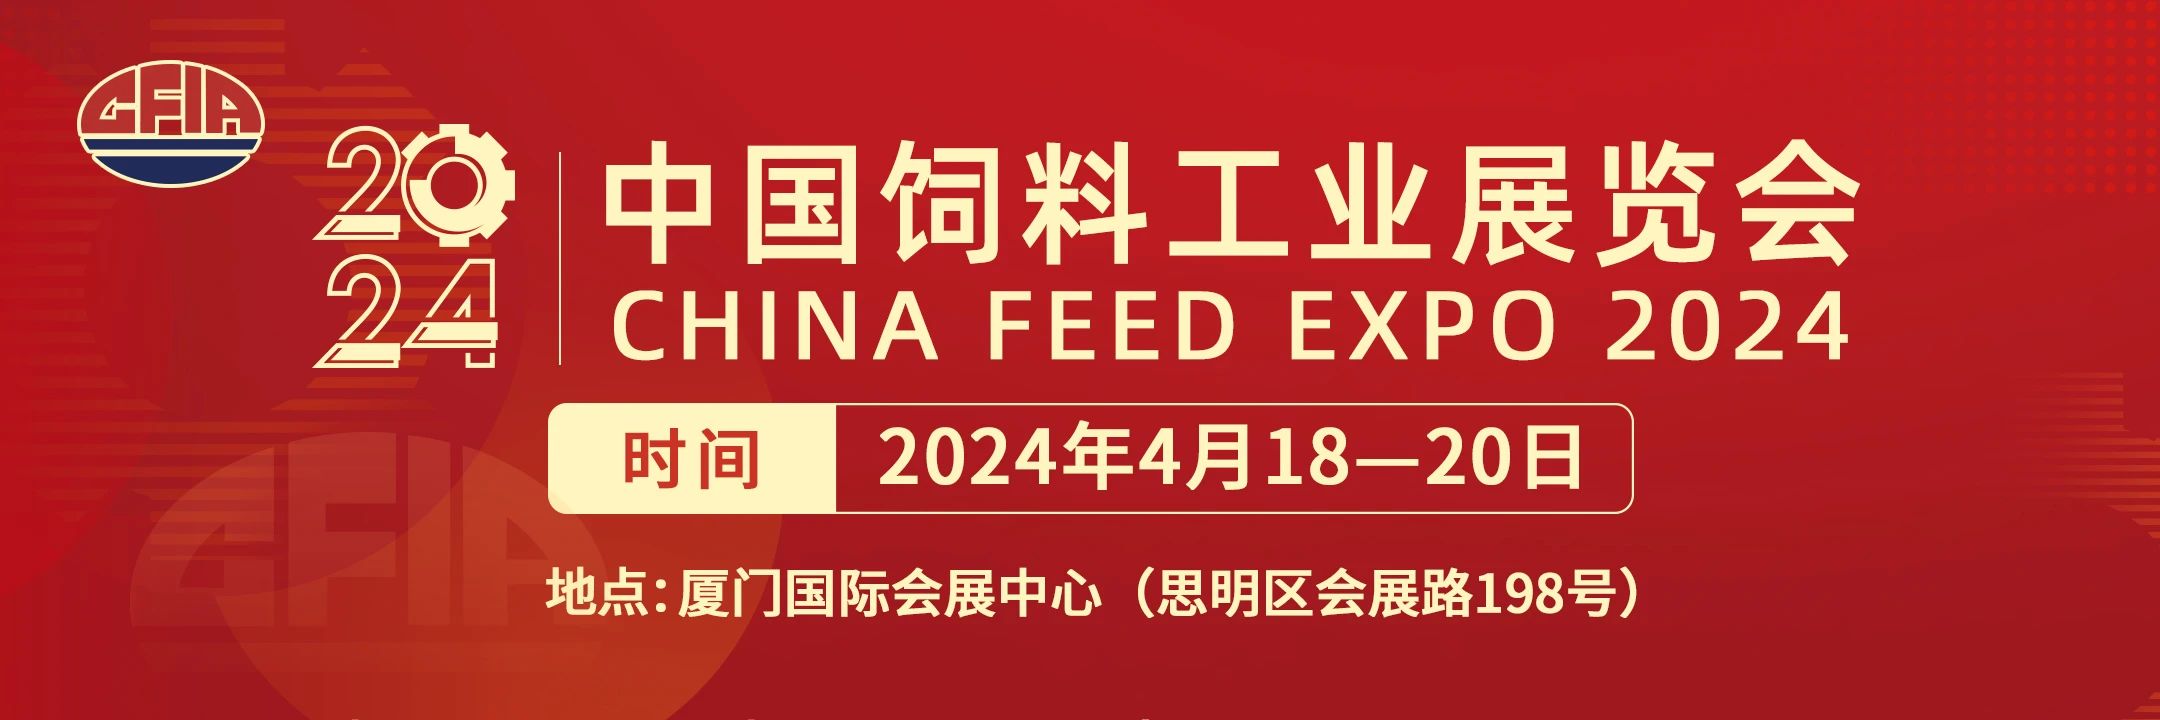 2024中国饲料工业展览会新闻发布会在厦门召开